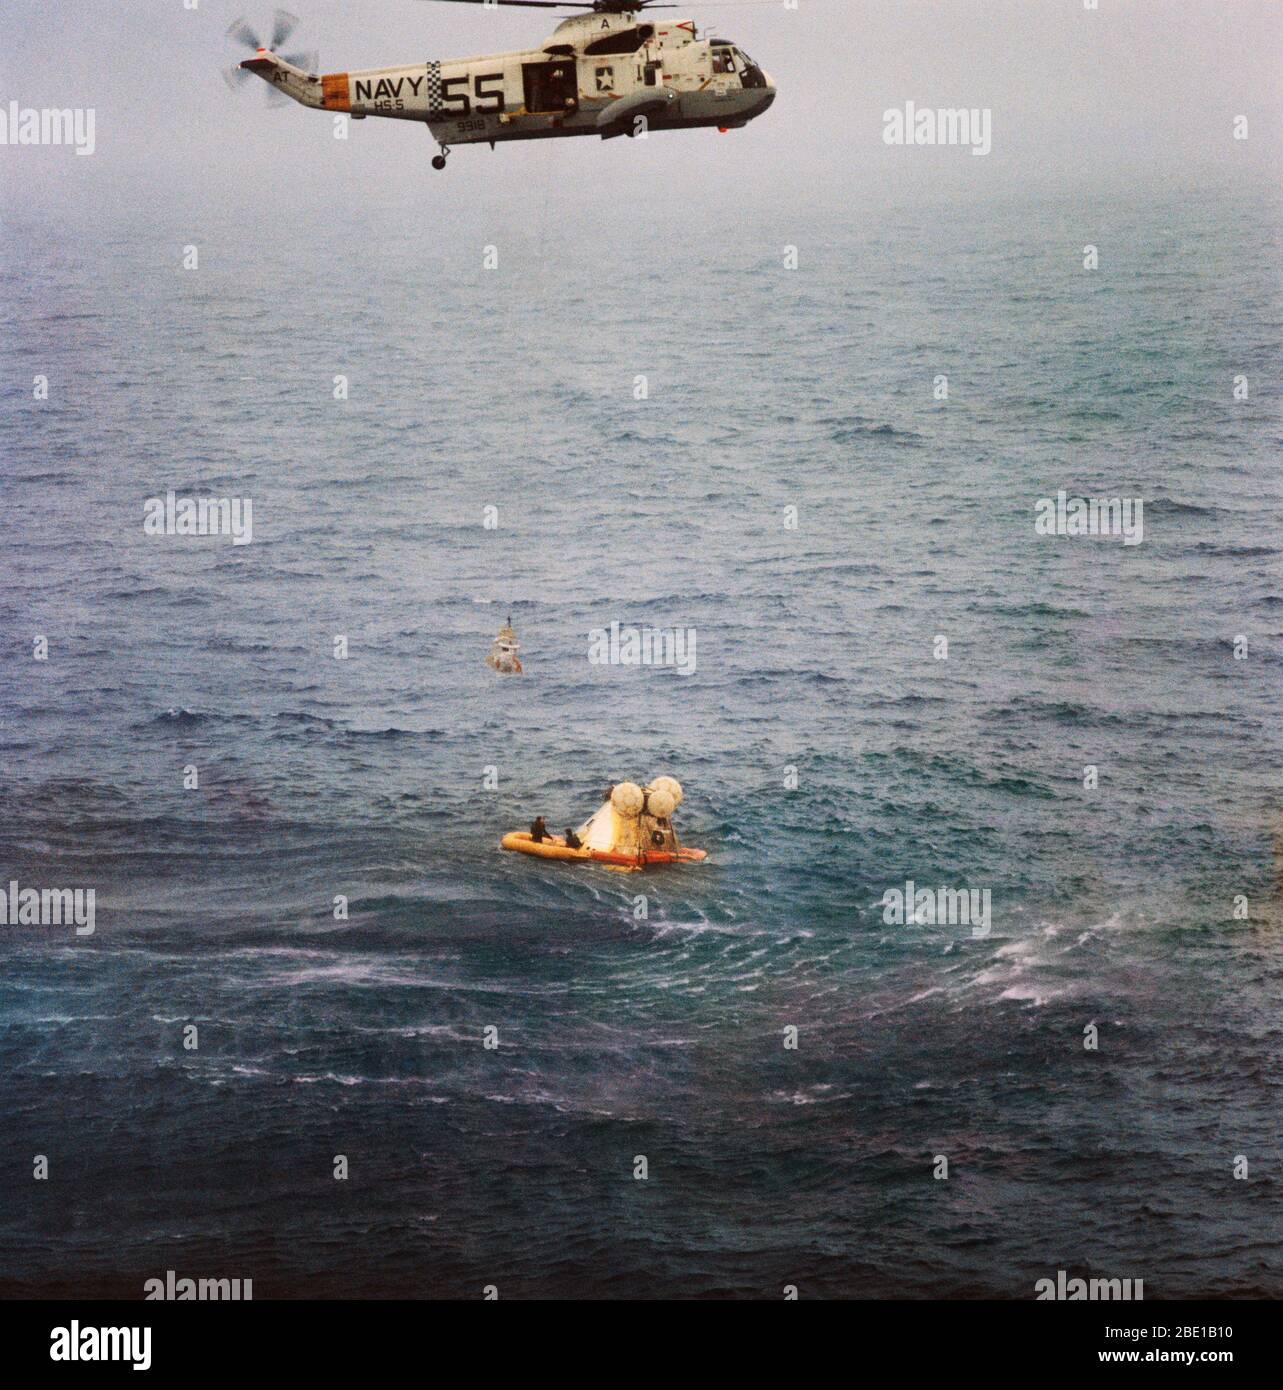 Un membro dell'Apollo 7 equipaggio è issato fino al ripristino di un elicottero a bordo della USS Essex durante le operazioni di ripristino. L' Apollo 7 veicoli spaziali spruzzato verso il basso a 7:11 a.m., Ottobre 22, 1968, circa 200 miglia nautiche a sud-sud-ovest di Bermuda. Photo credit: la NASA Foto Stock